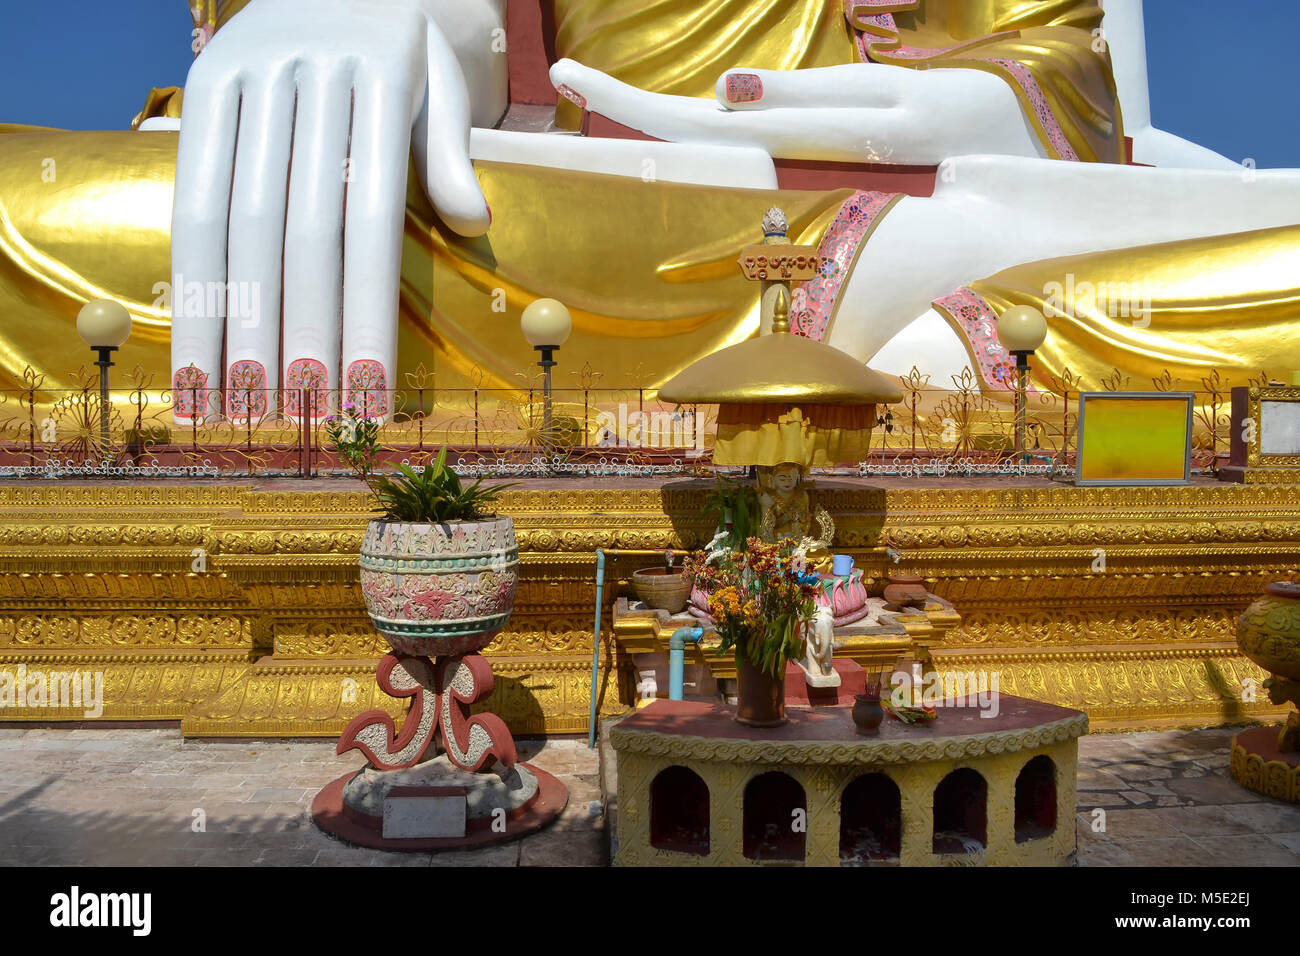 Dettagli della statua del Buddha presso la Pagoda Kyaikpun in Bago in Birmania Myanmar Foto Stock